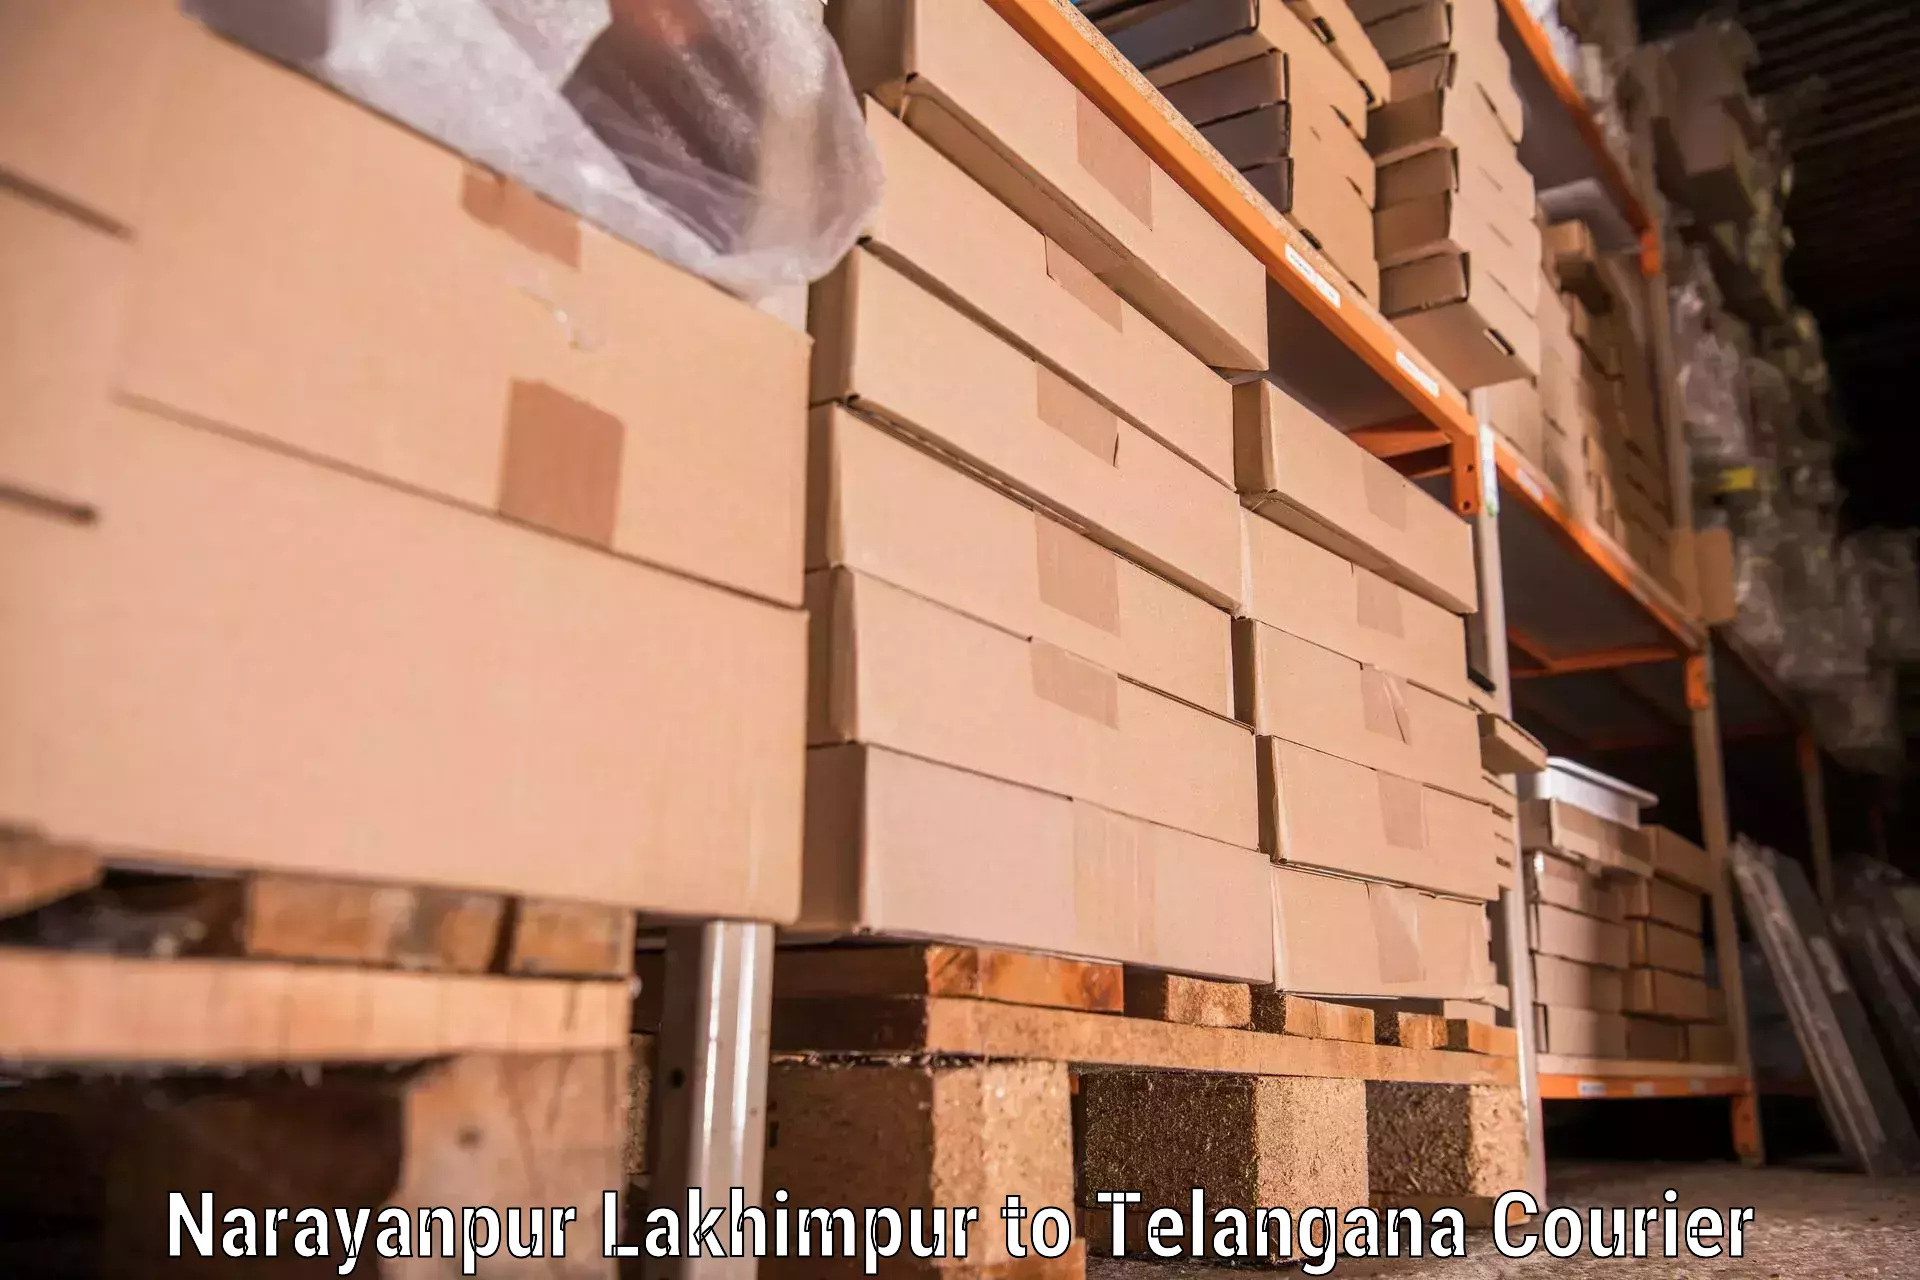 Efficient furniture movers Narayanpur Lakhimpur to Tiryani